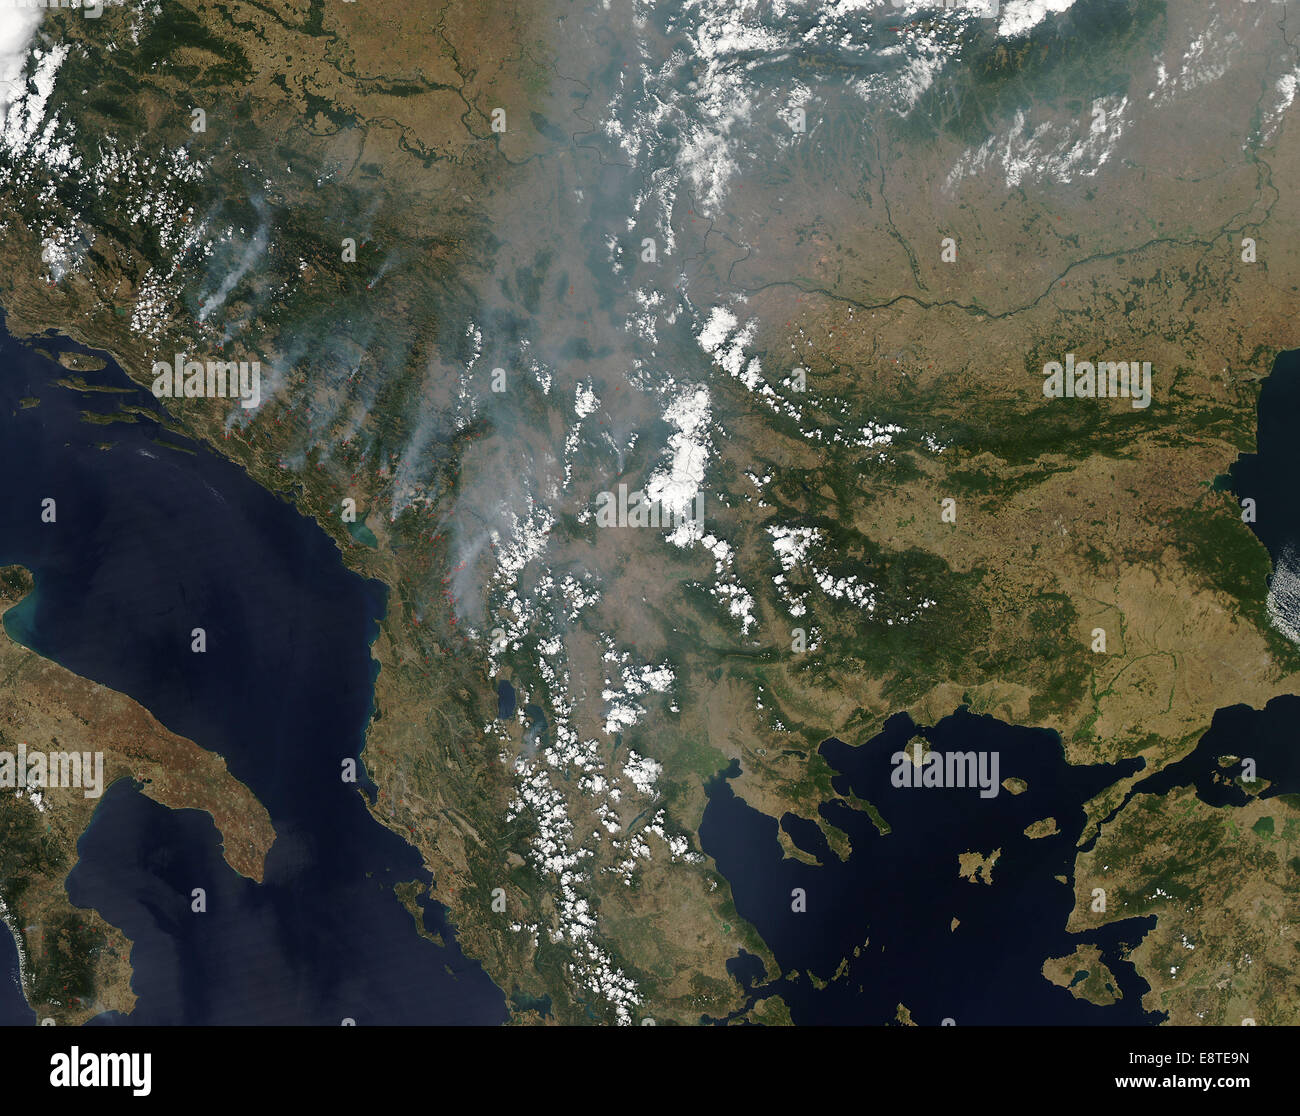 Questo naturale-color satellitare immagine mostra il fumo lo streaming da decine di incendi in Europa sud-orientale. Esso è stato raccolto mediante la risoluzione moderata Imaging Spectroradiometer (dello spettroradiometro MODIS) a bordo del satellite Aqua il 26 agosto 2012. Foto Stock